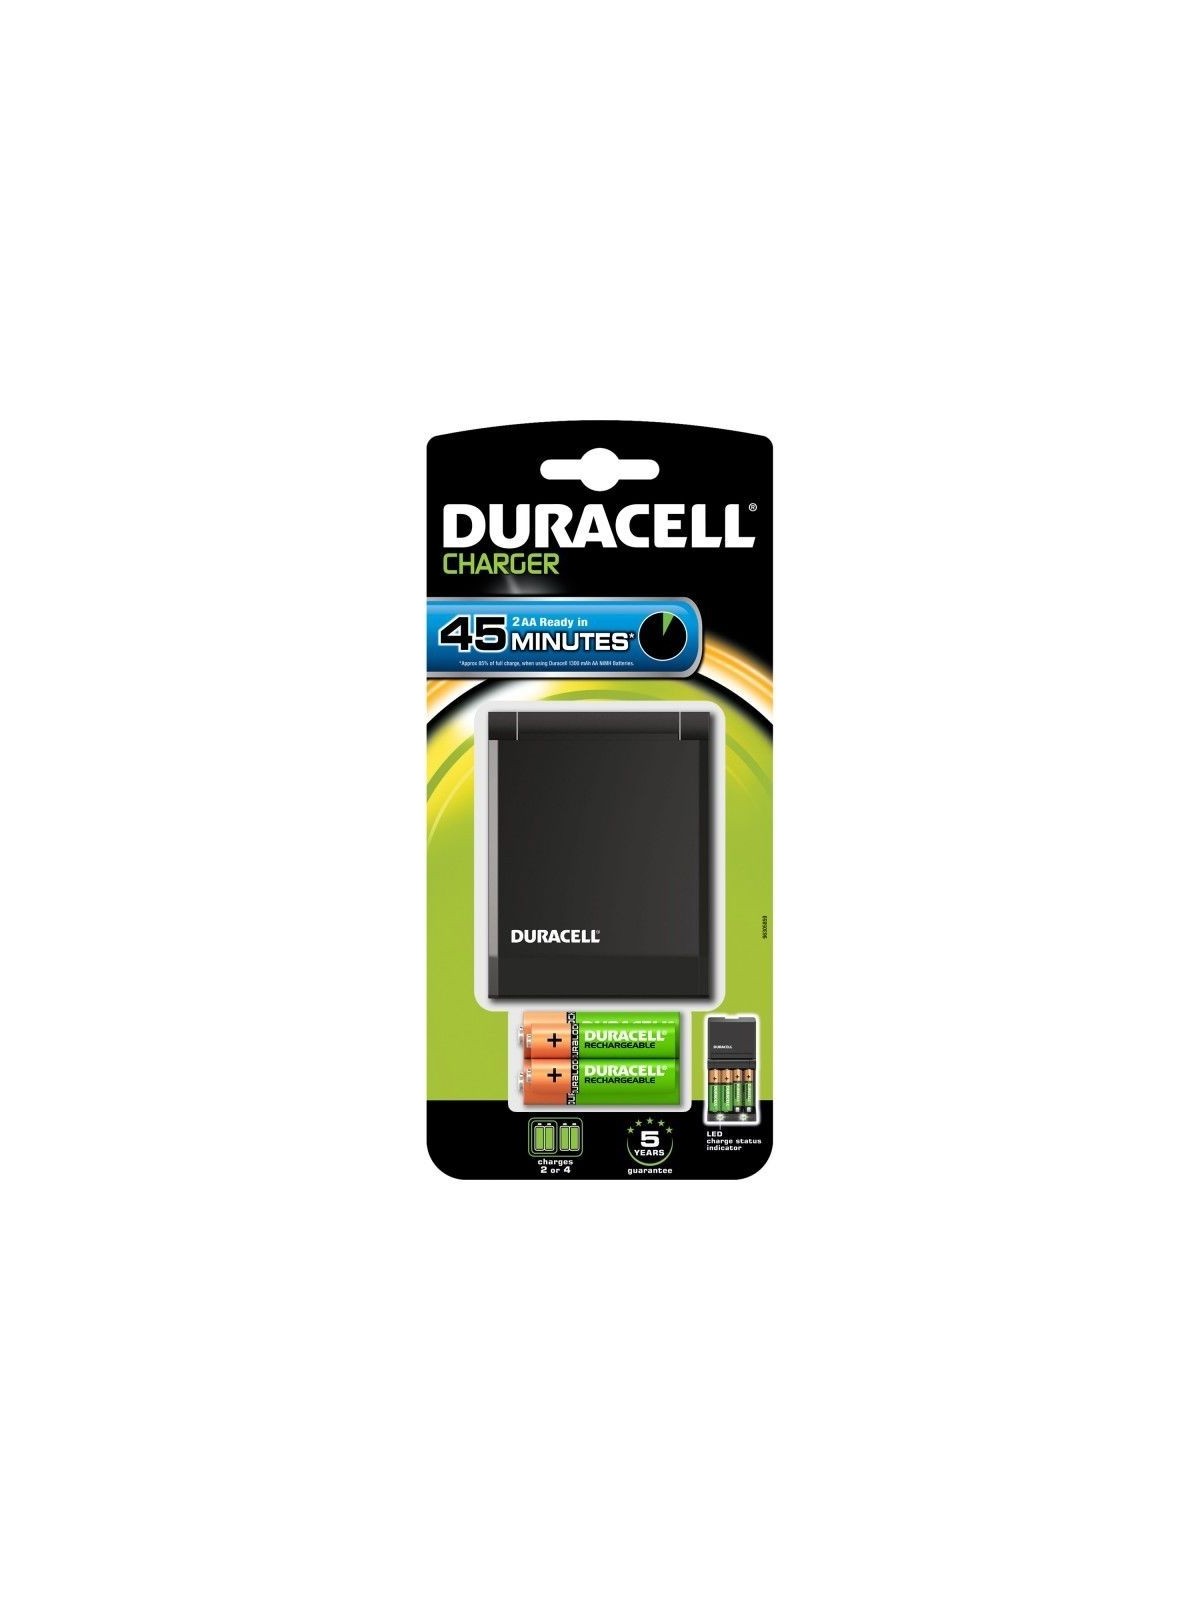 Duracell Cargador Rápido 45Min & 2 uds AA & 2 uds AAA - Comprar Pilas y baterías Duracell - Pilas & baterías (1)